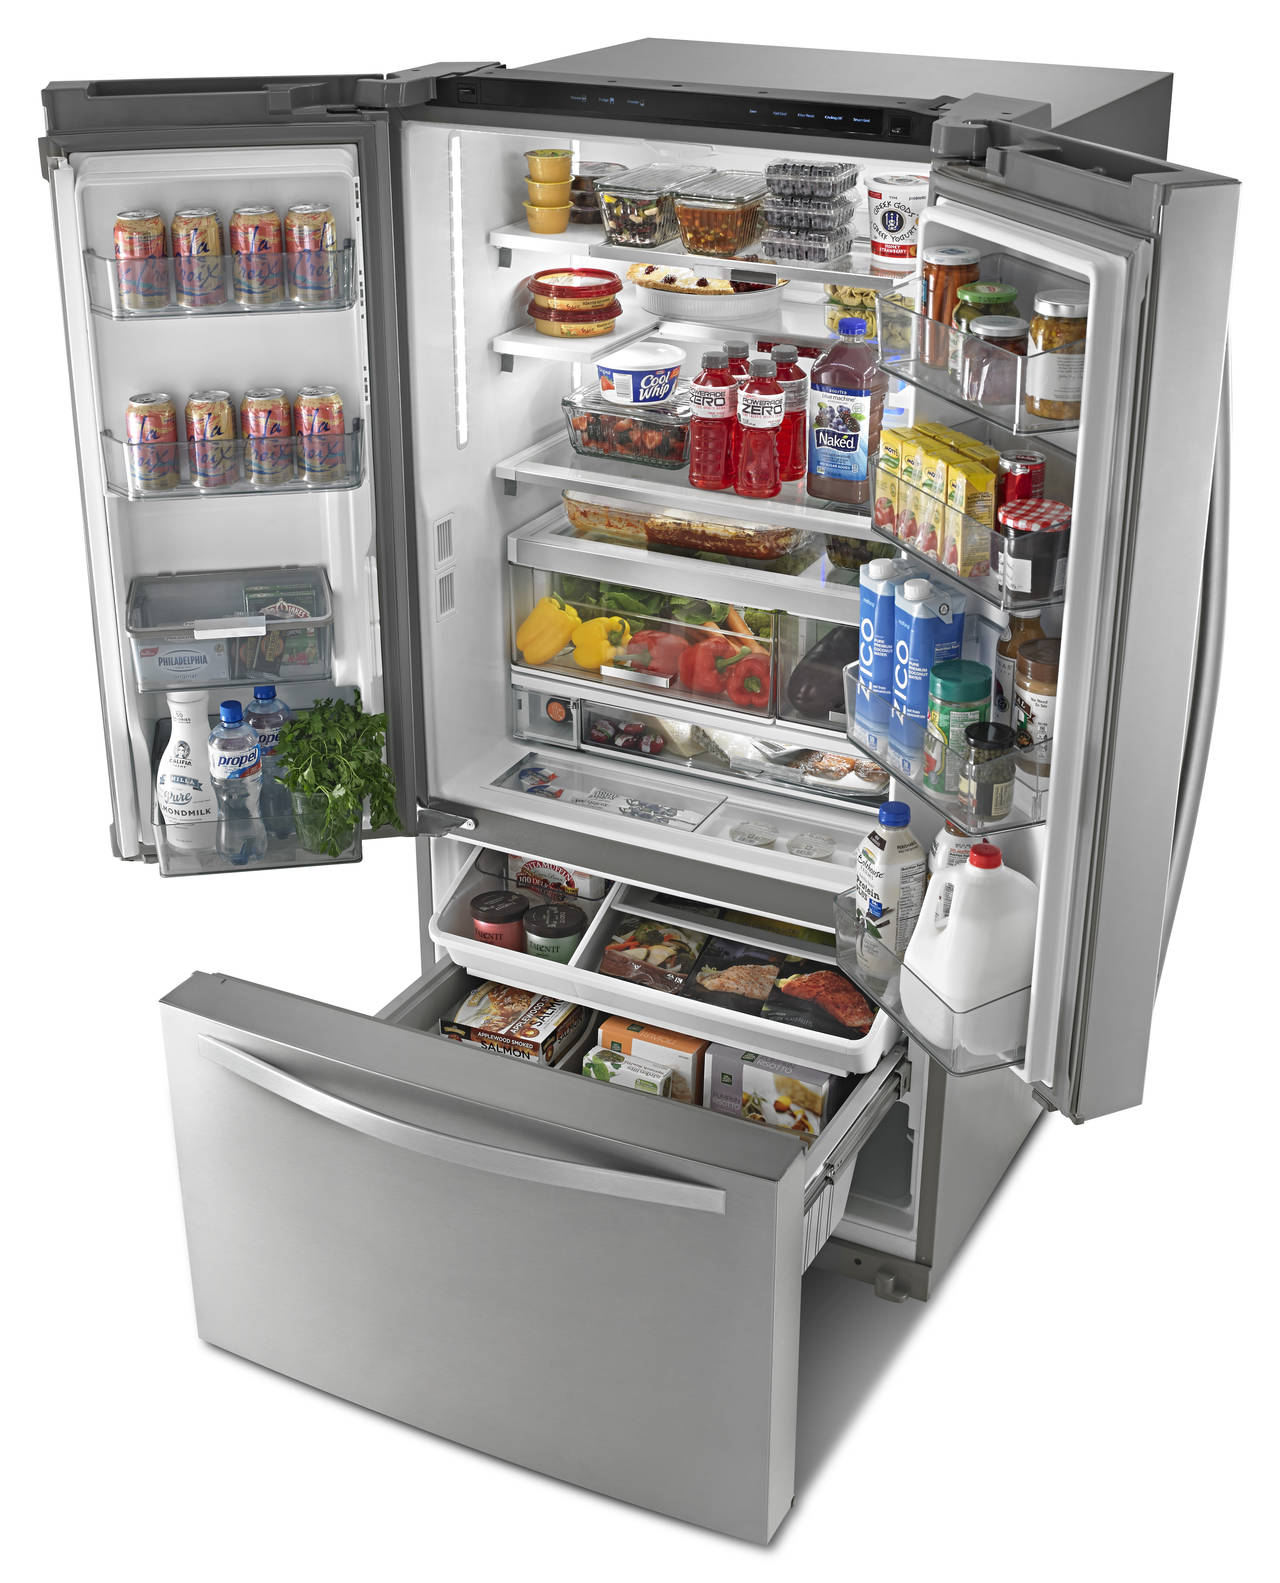 Whirlpool® Smart French Door Bottom Mount Refrigerator è il frigorifero connesso con la piattaforma Works with Nest che consente alle famiglie di mantenere costantemente il controllo del proprio elettrodomestico.